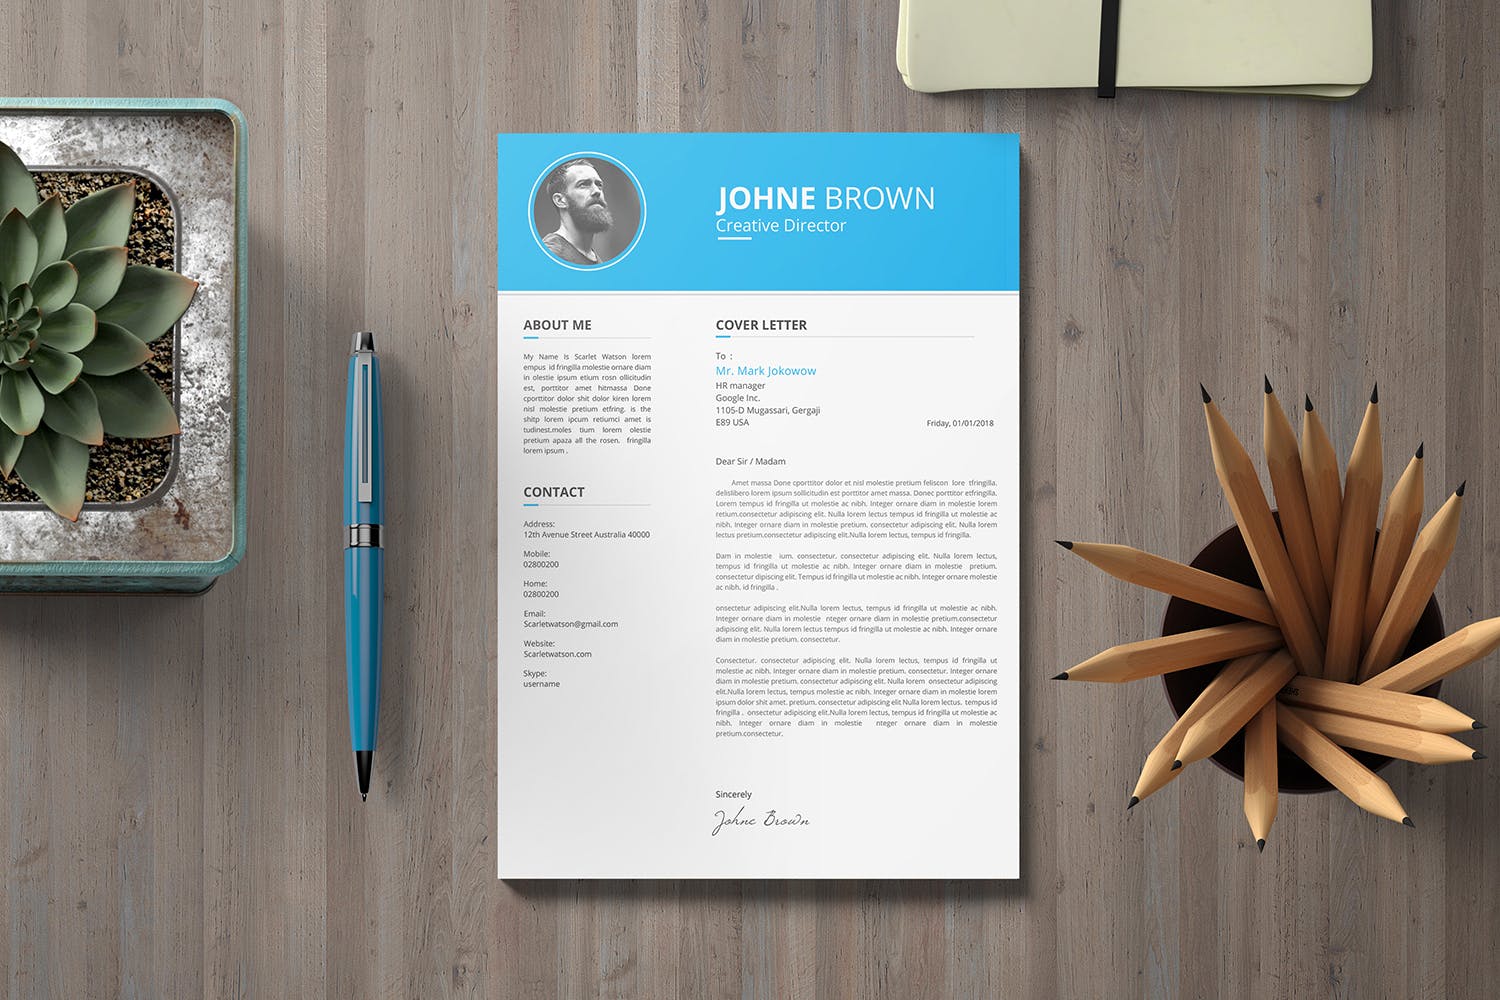 创意总监工作履历表设计模板 CV Resume插图3